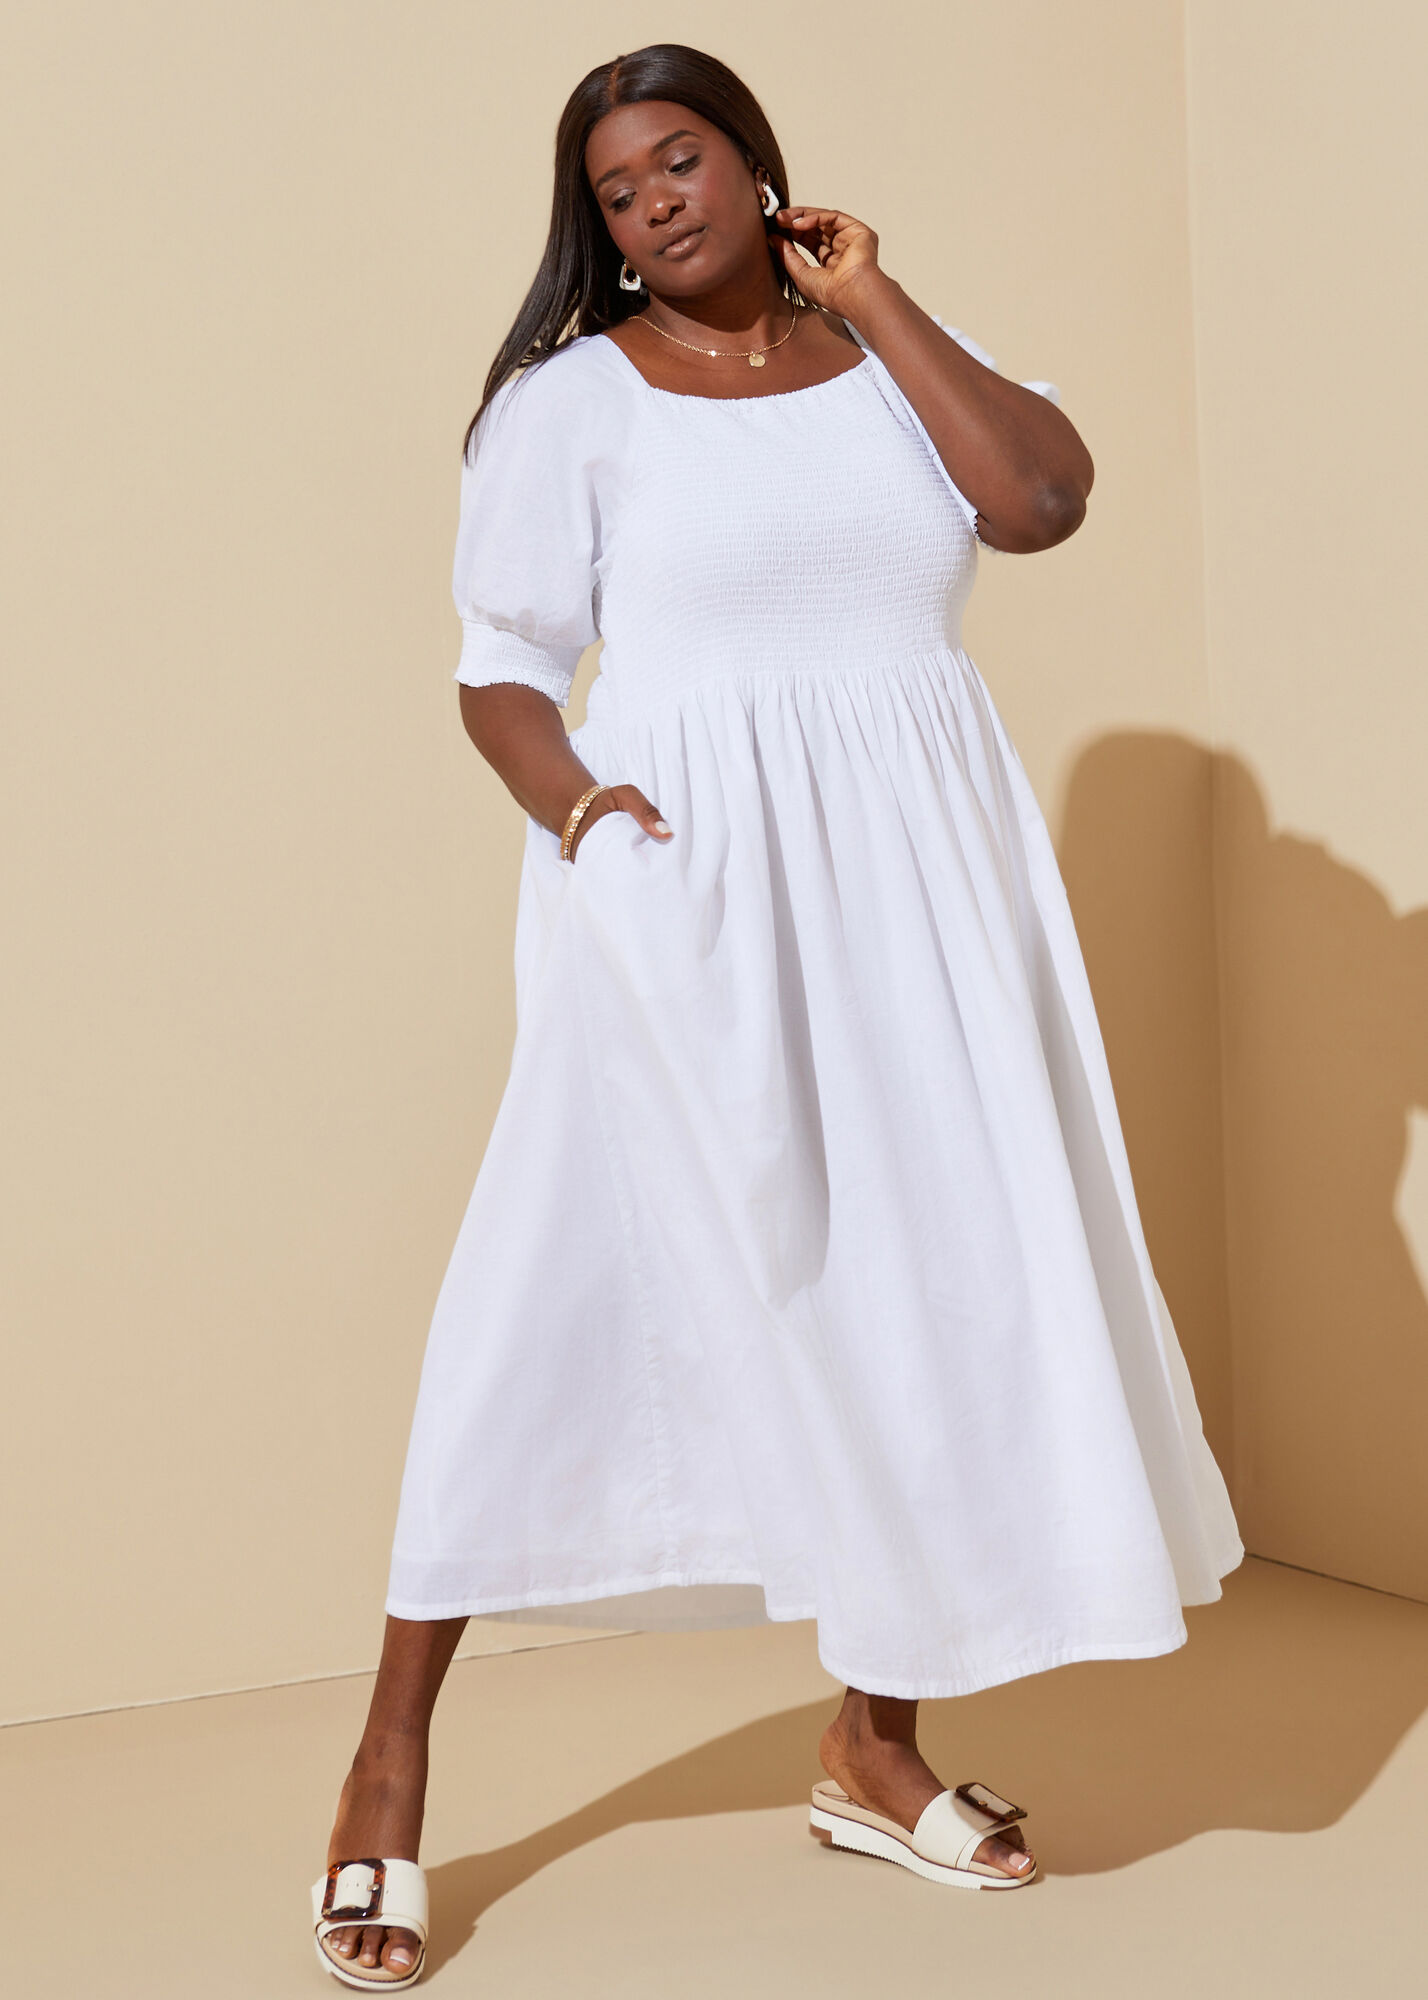 New Autumn White Casual Dress Plus Size